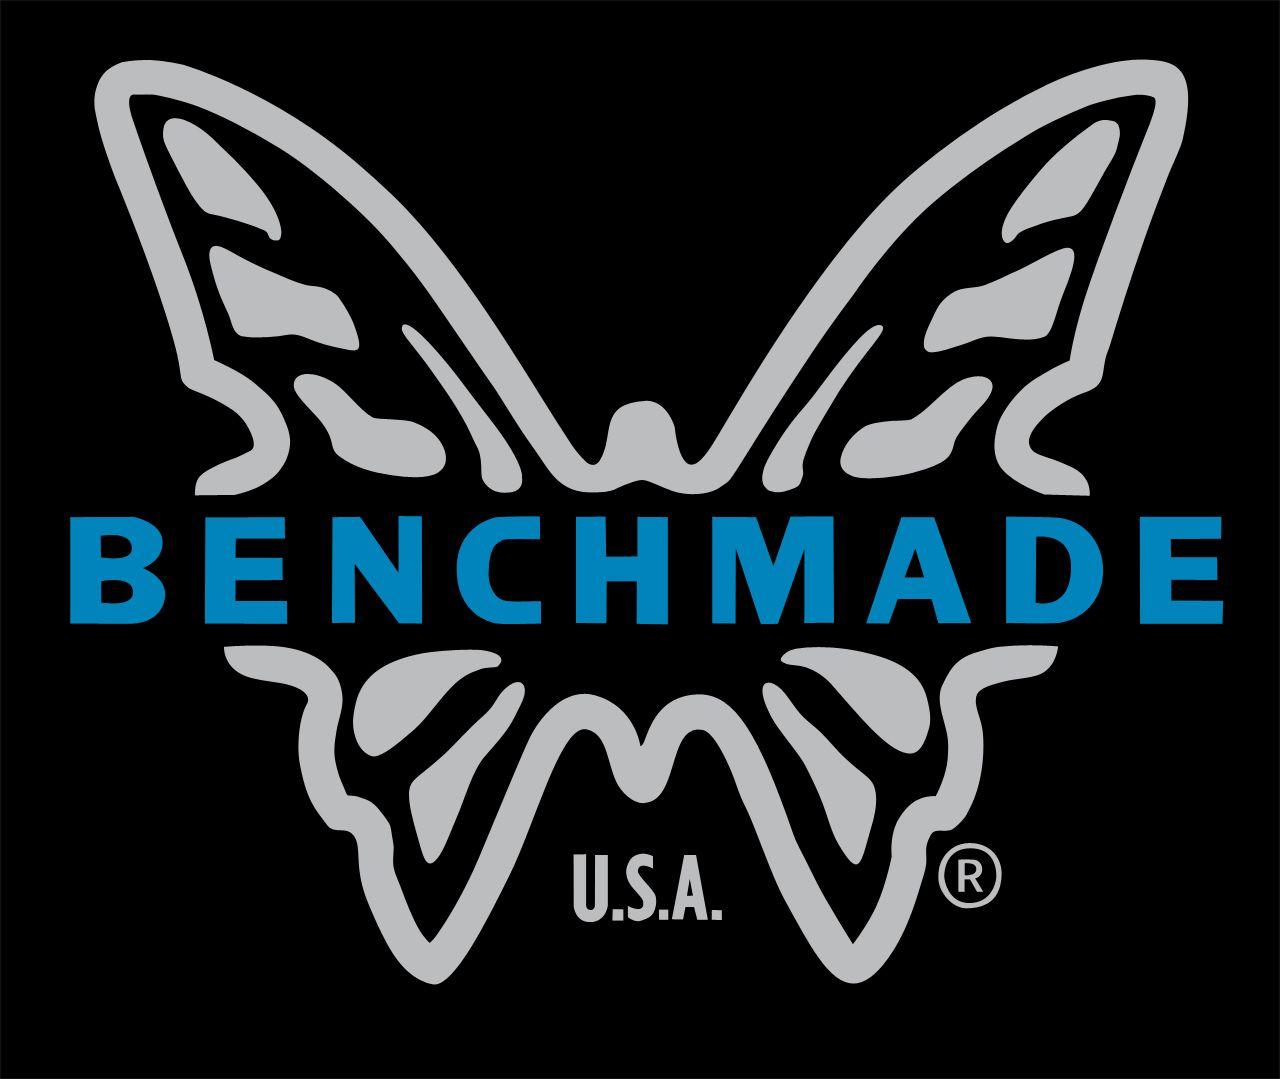 Benchmade Logo - benchmade-logo - The Knife Blog